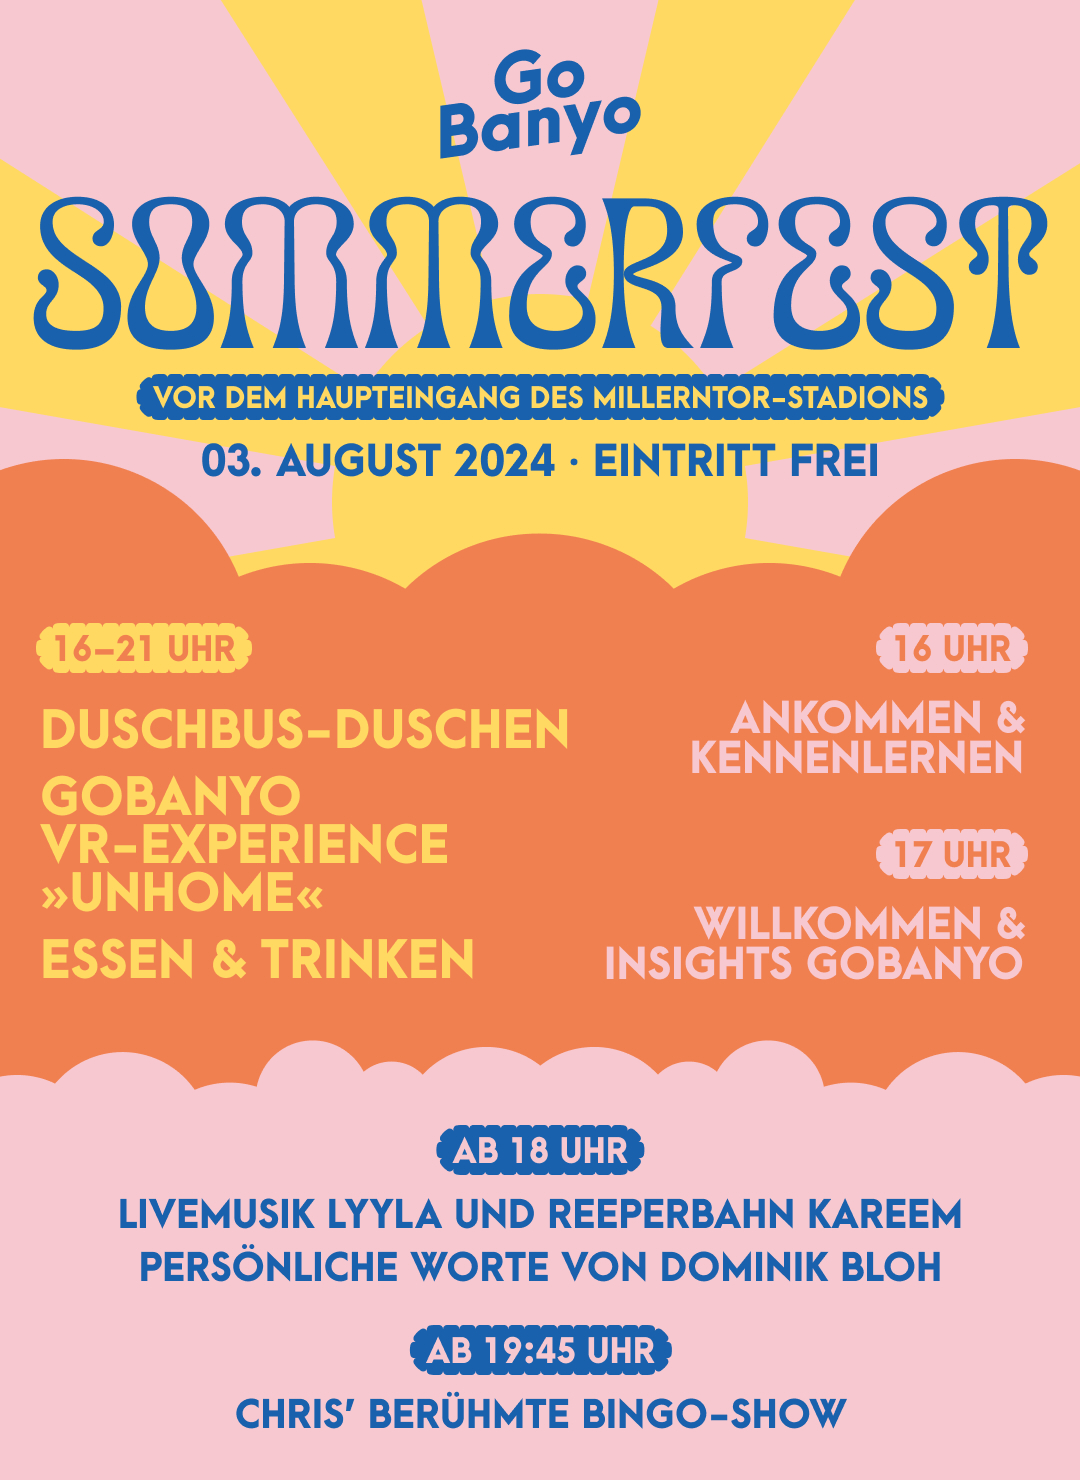 Bunter Flyer mit vielen Infos zum GoBaanyo-Sommerfest.